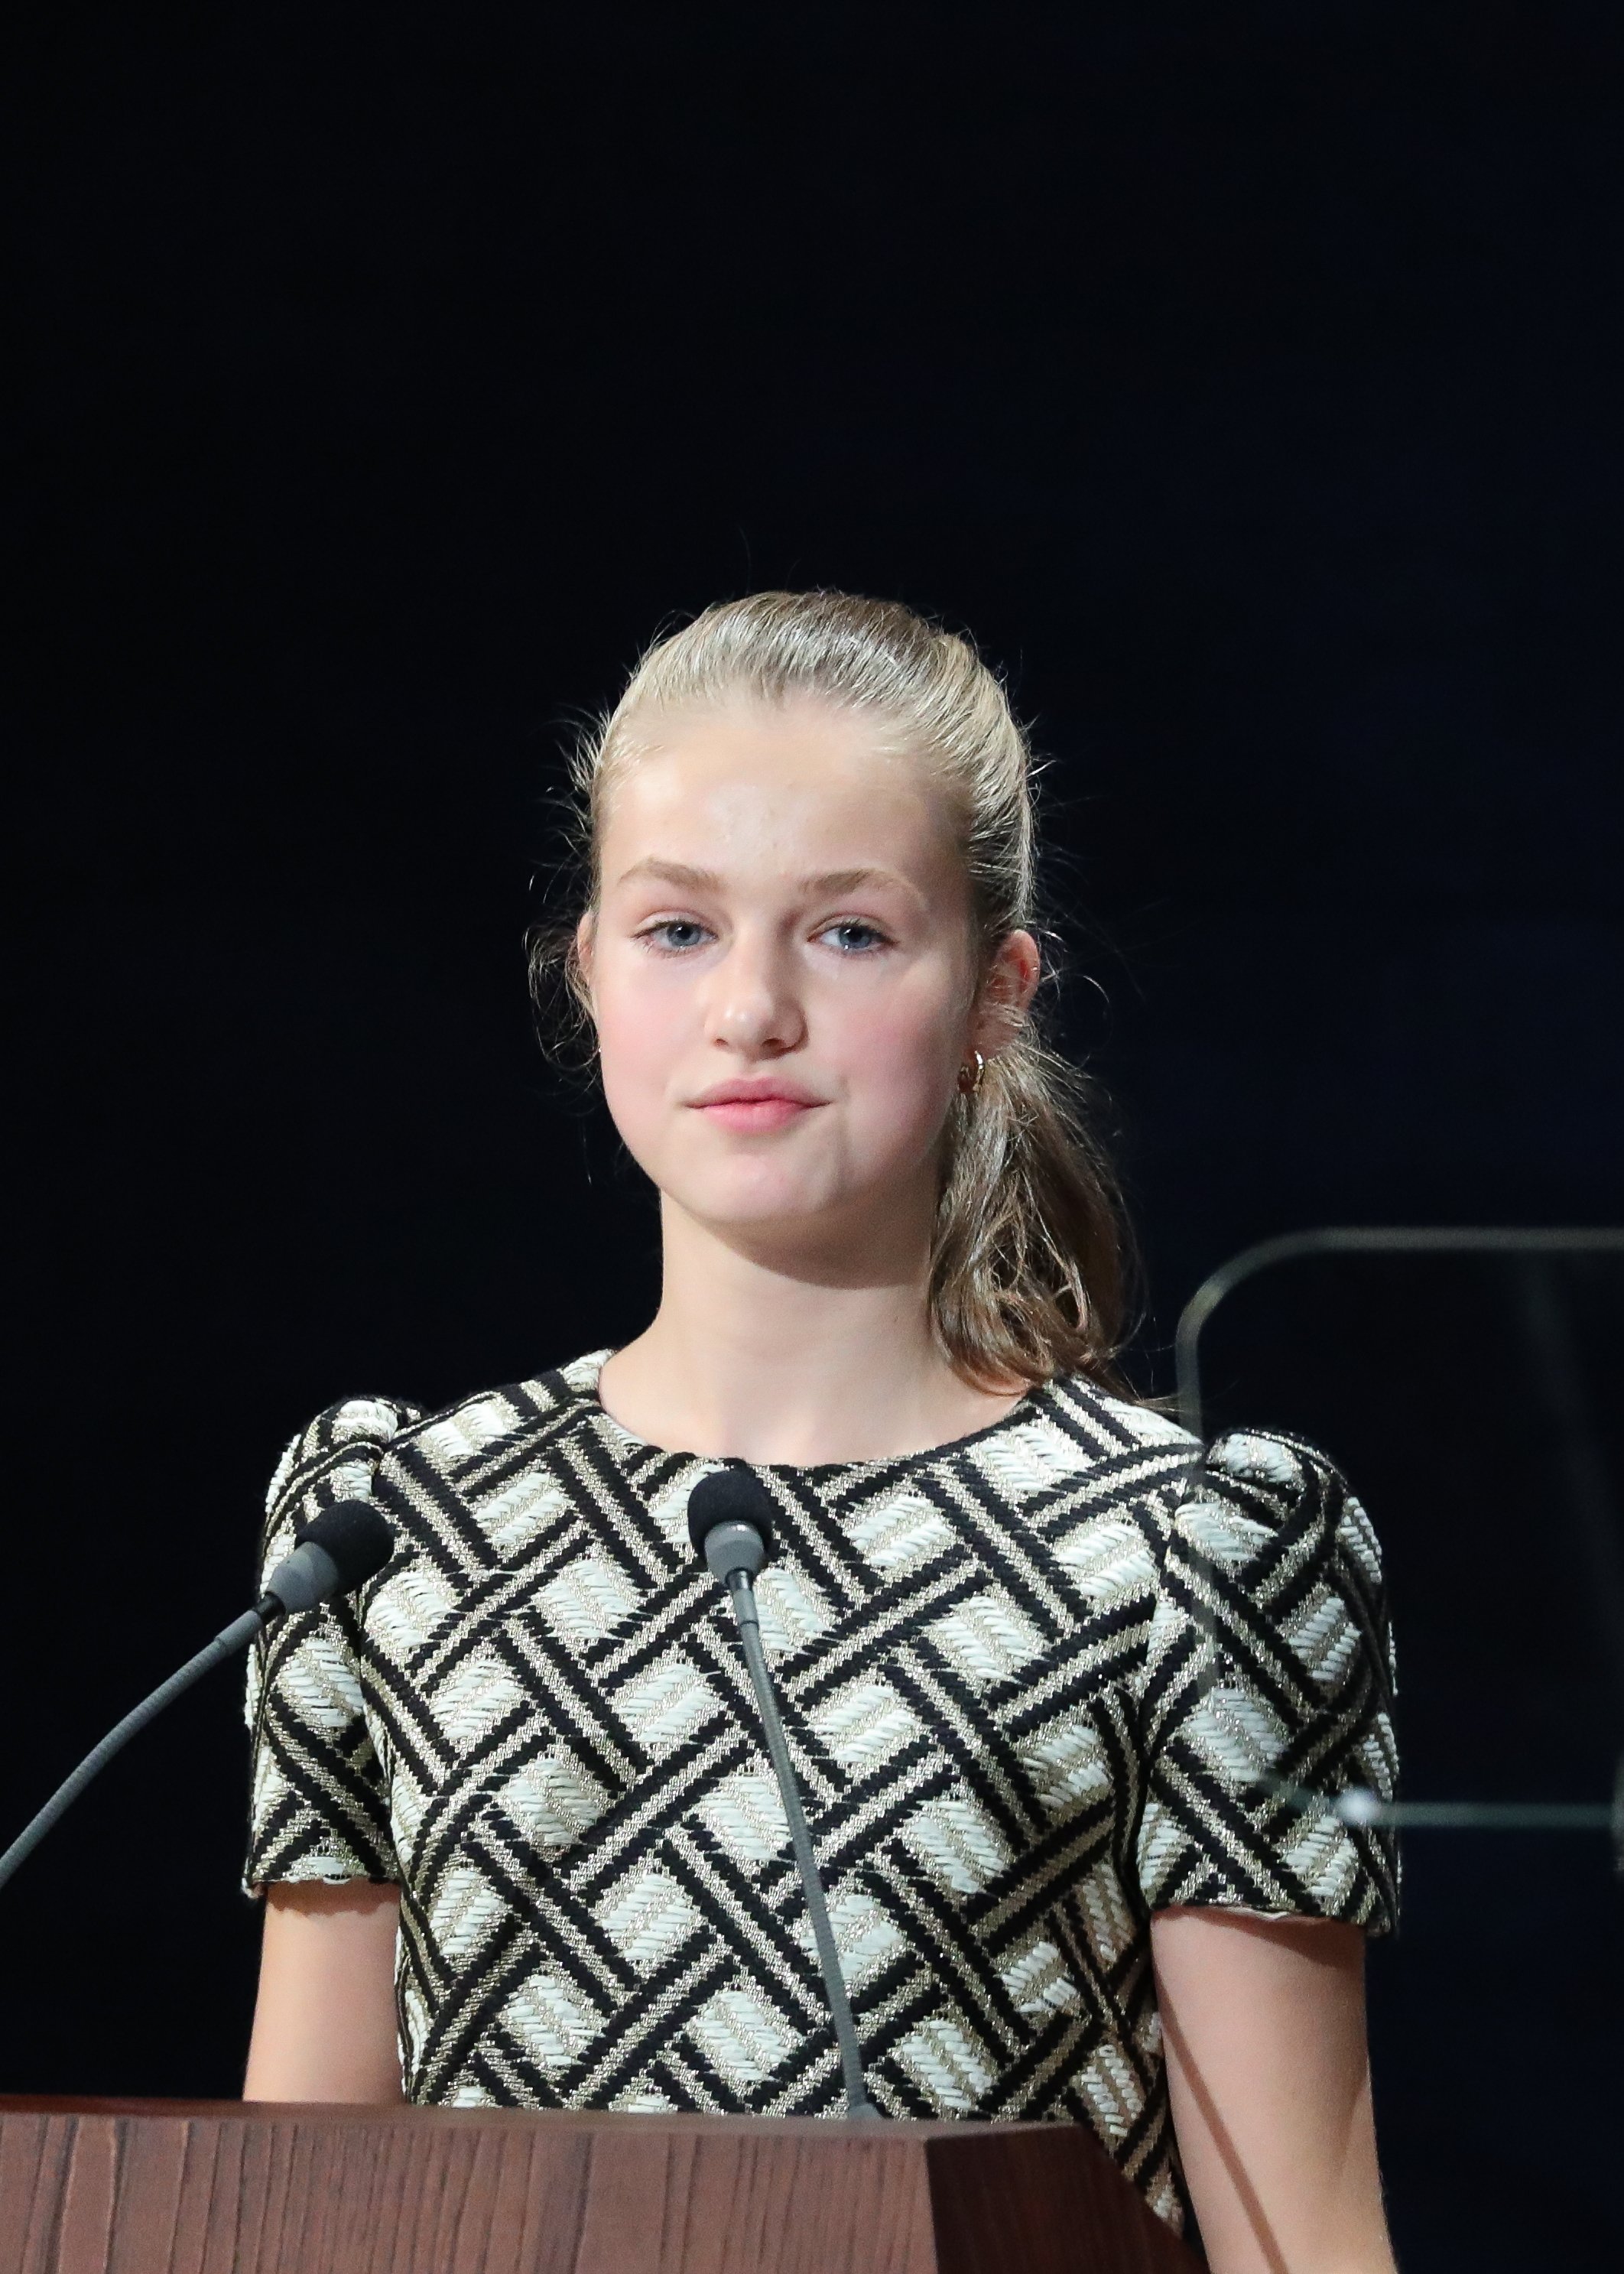 La princesa de Noruega fa 18 anys: fotos espectaculars que Elionor mai no es farà